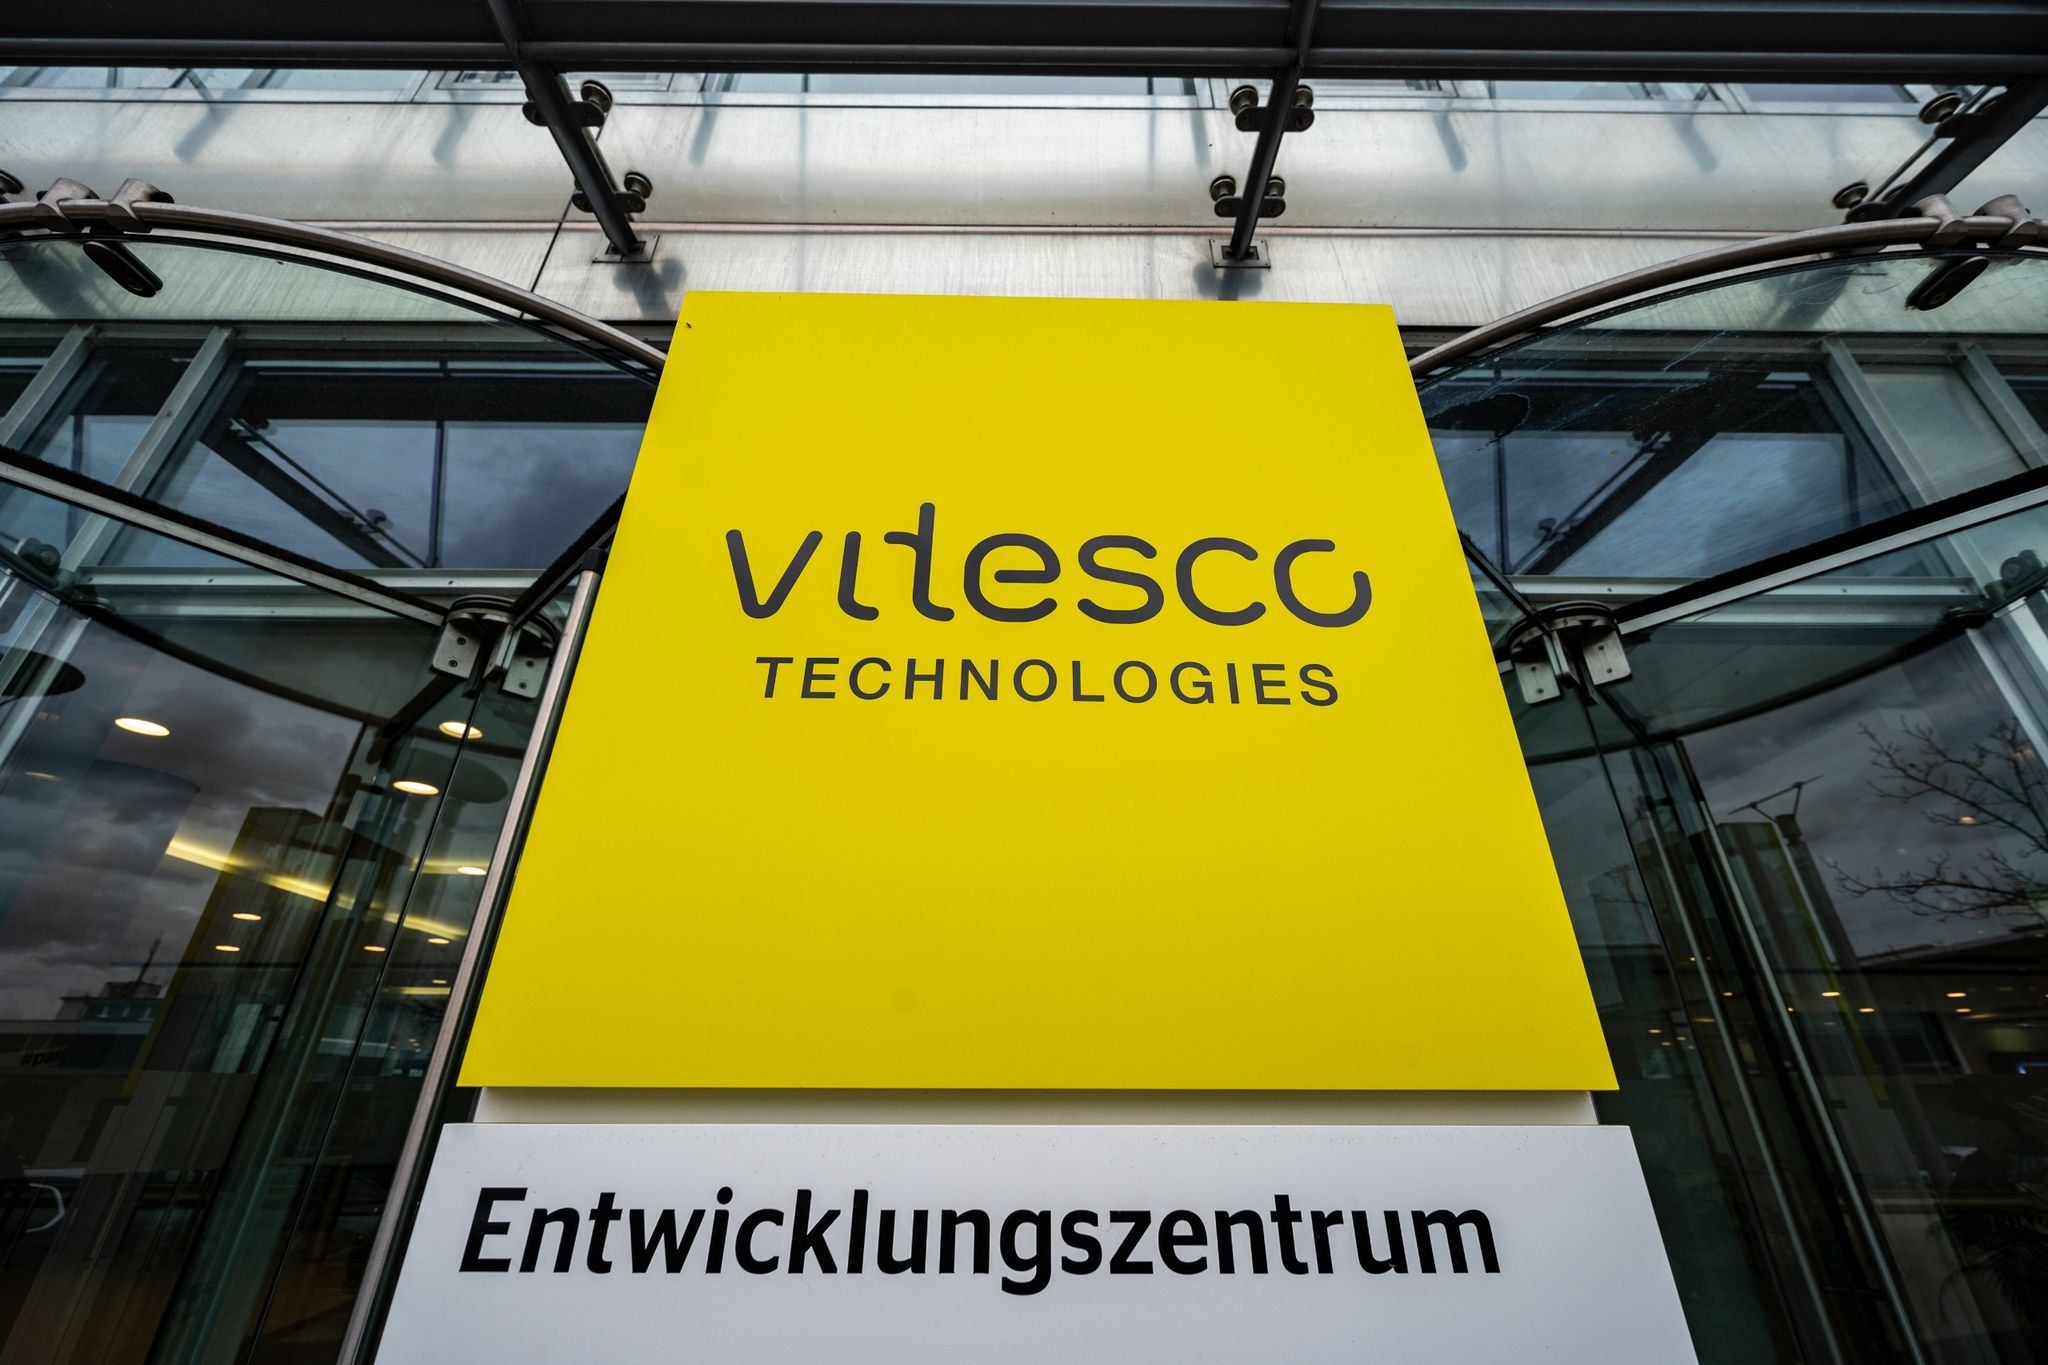 „Vitesco Technologies- Entwicklungszentrum“ steht auf einem Schild vor dem Werksgelände von Vitesco.